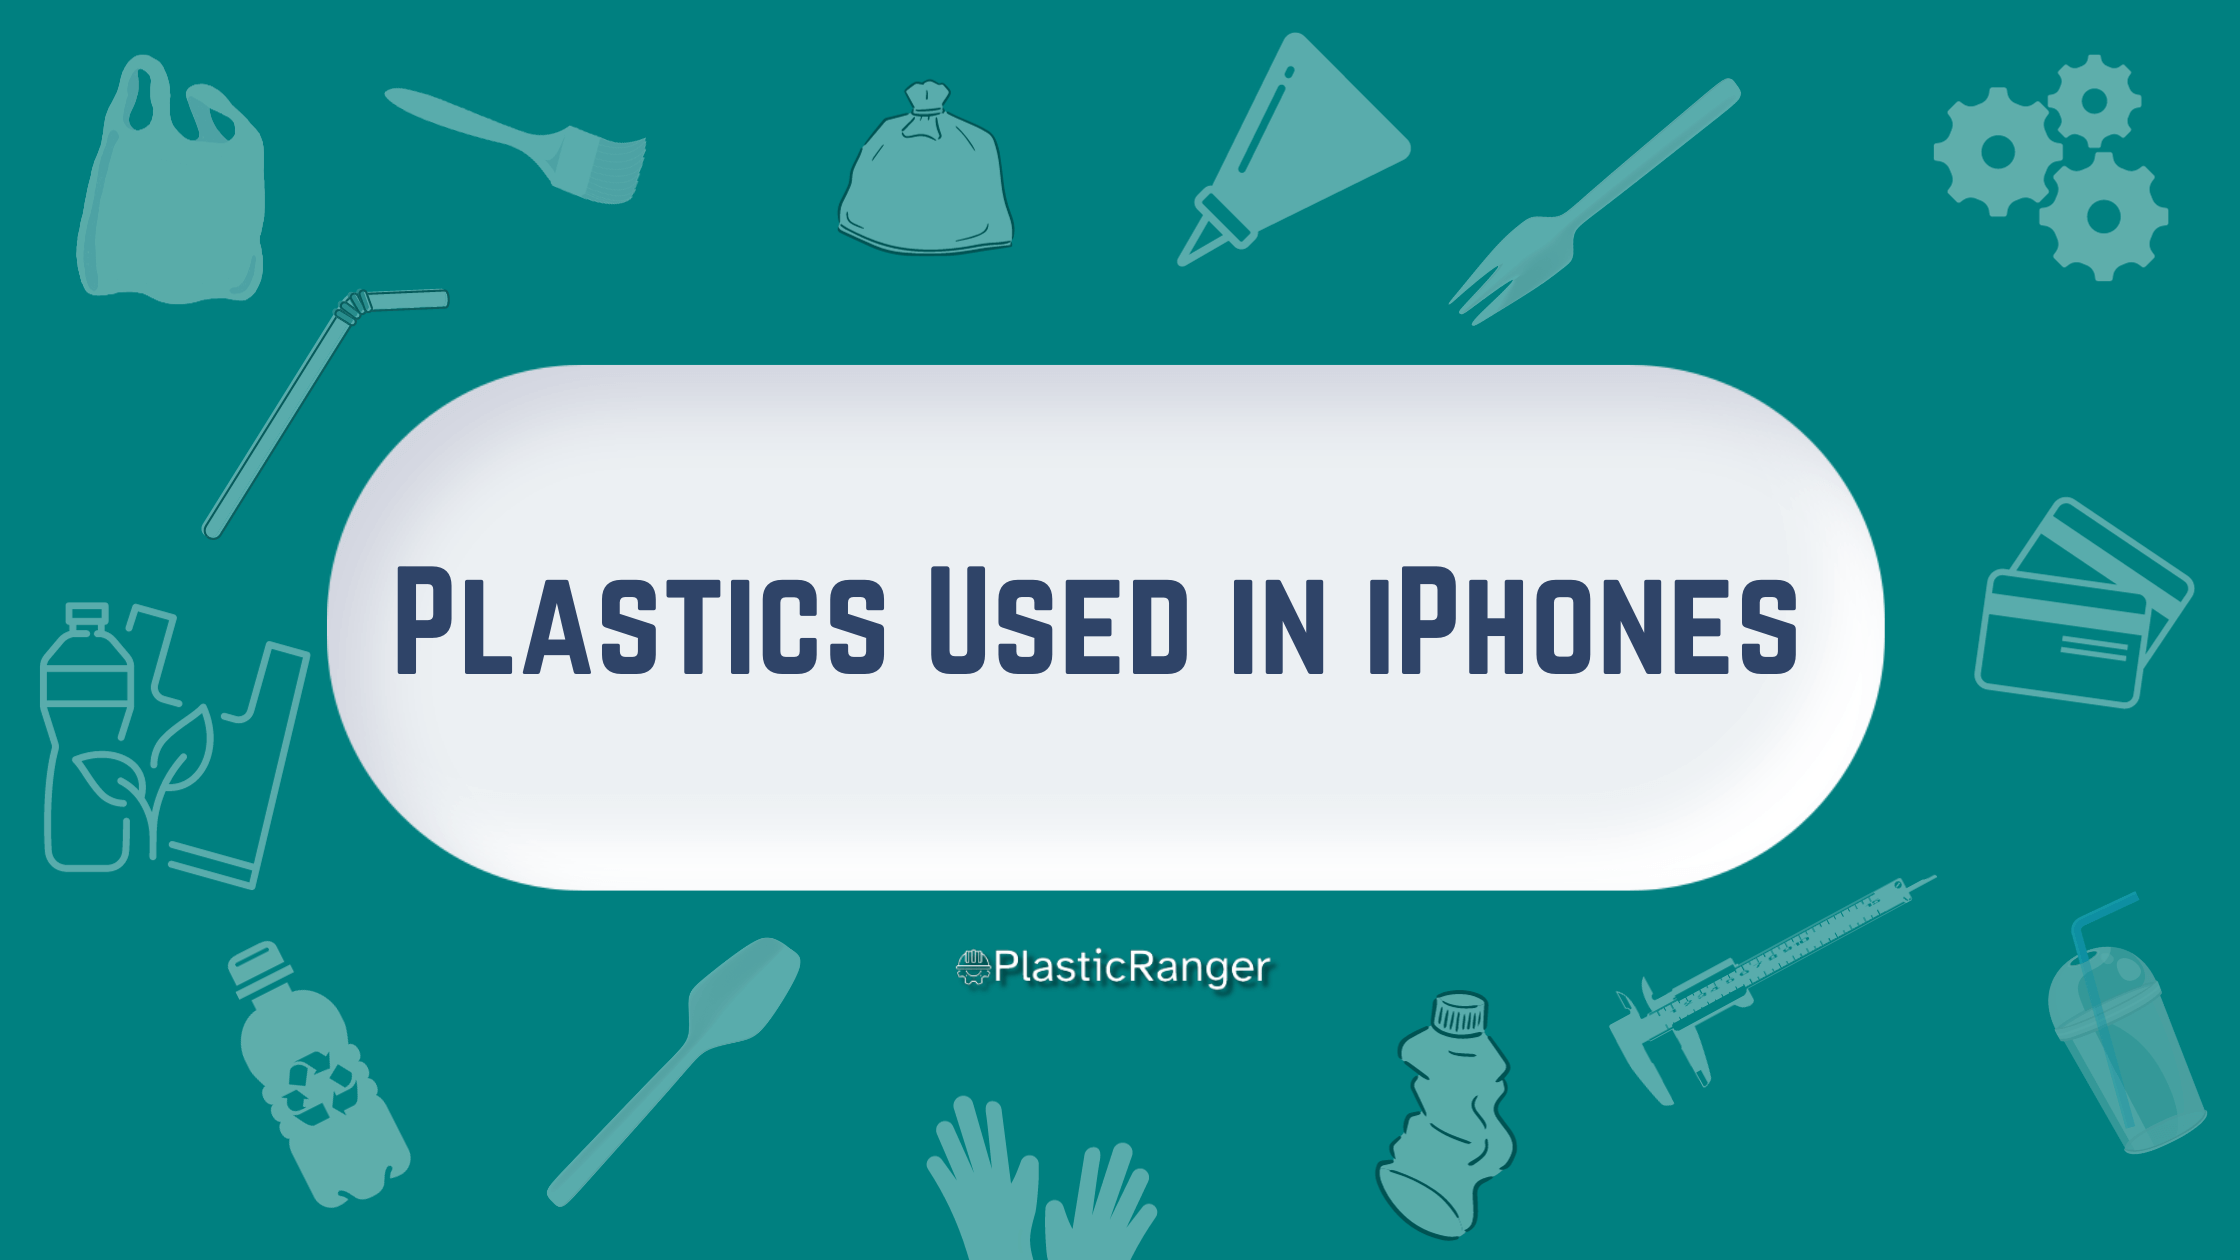 PLASTICS USED IN IPHONES